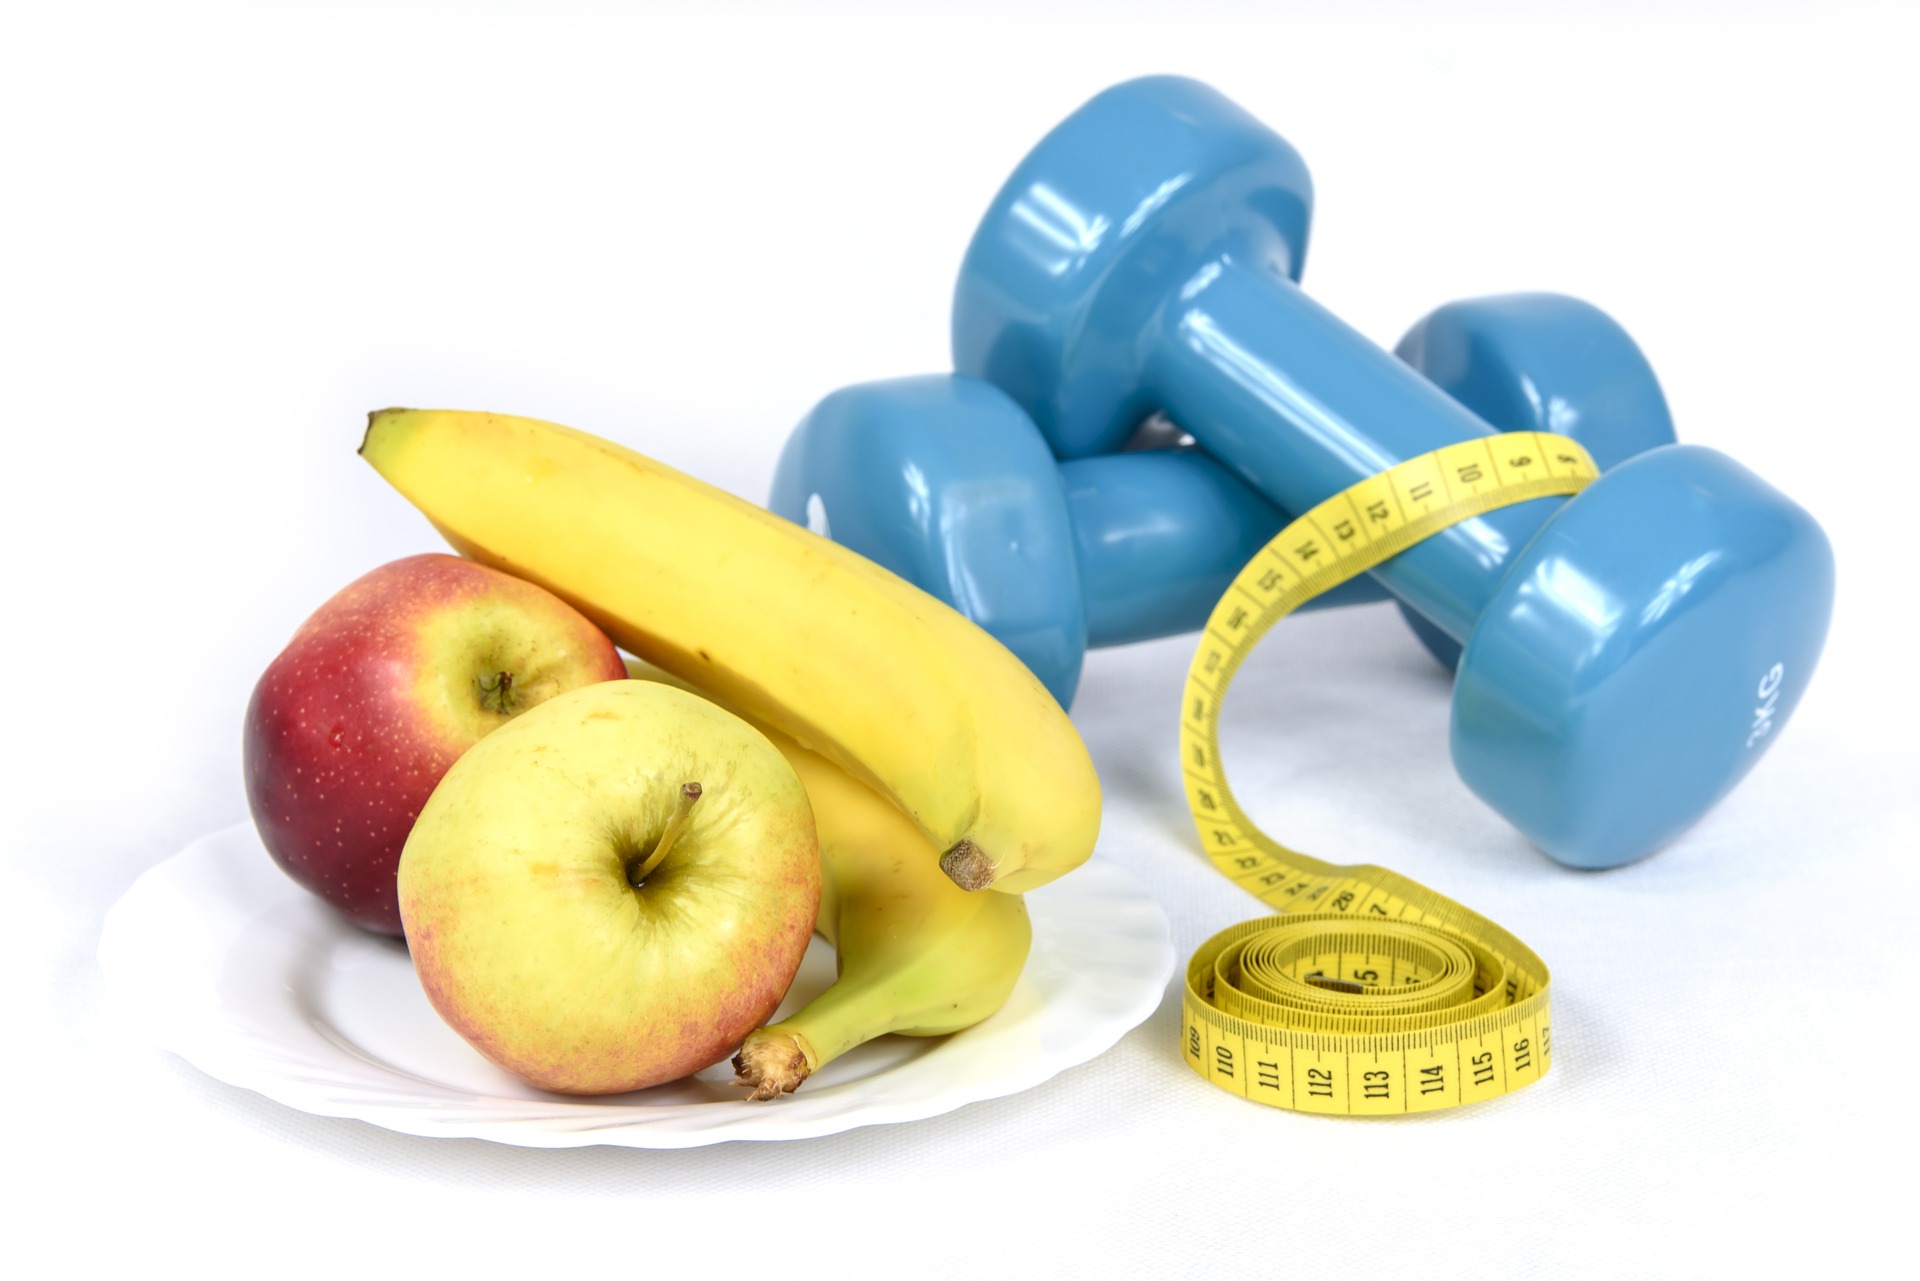 La imagen muestra una fotografía de plátanos, manzanas, unas pesas de color azul y una cinta métrica. 